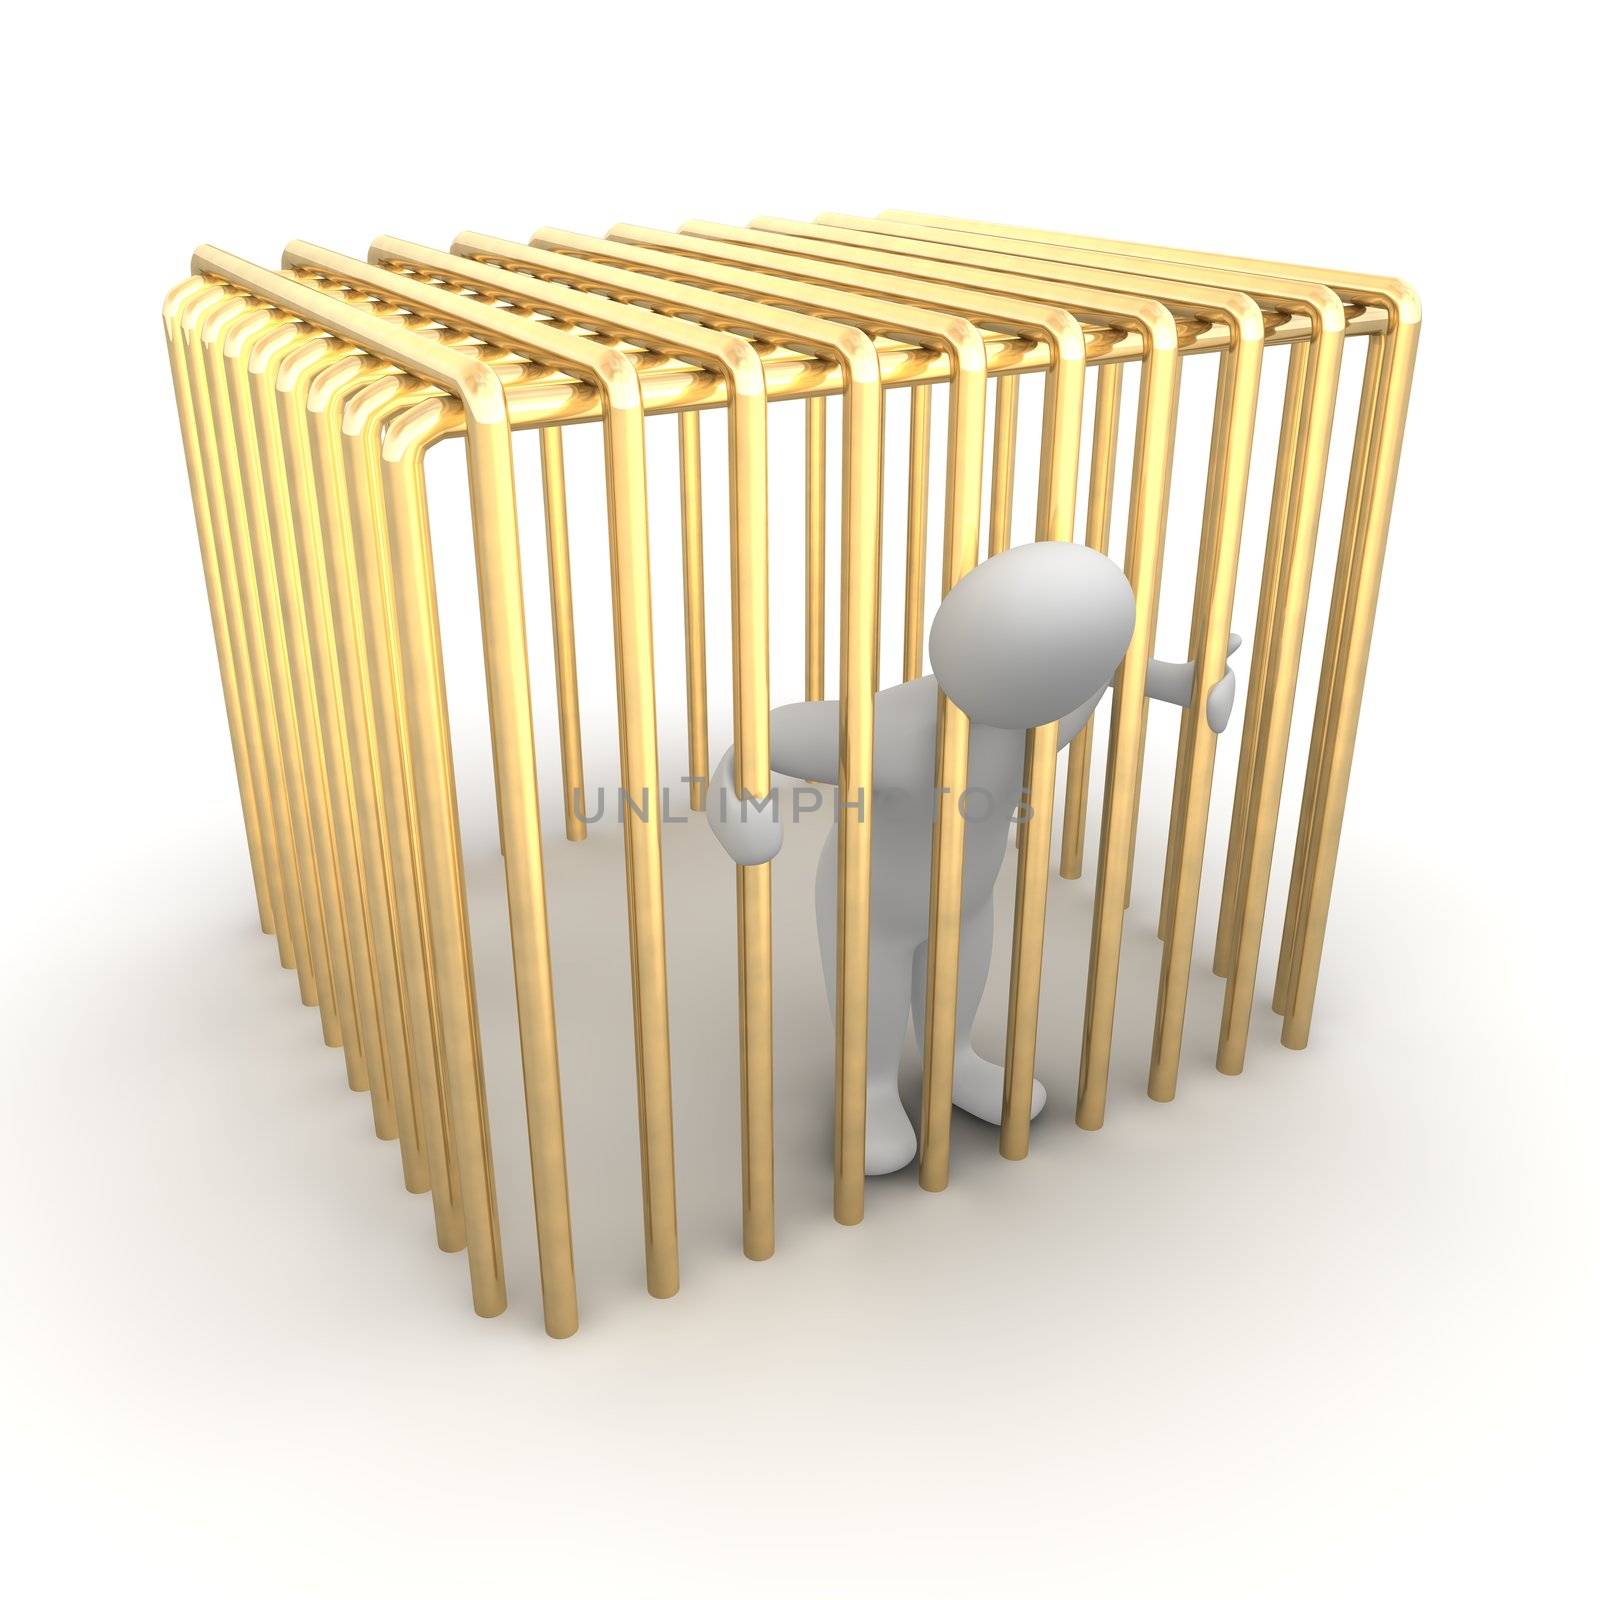 Man jailed in golden cage. 3d rendered illustration.